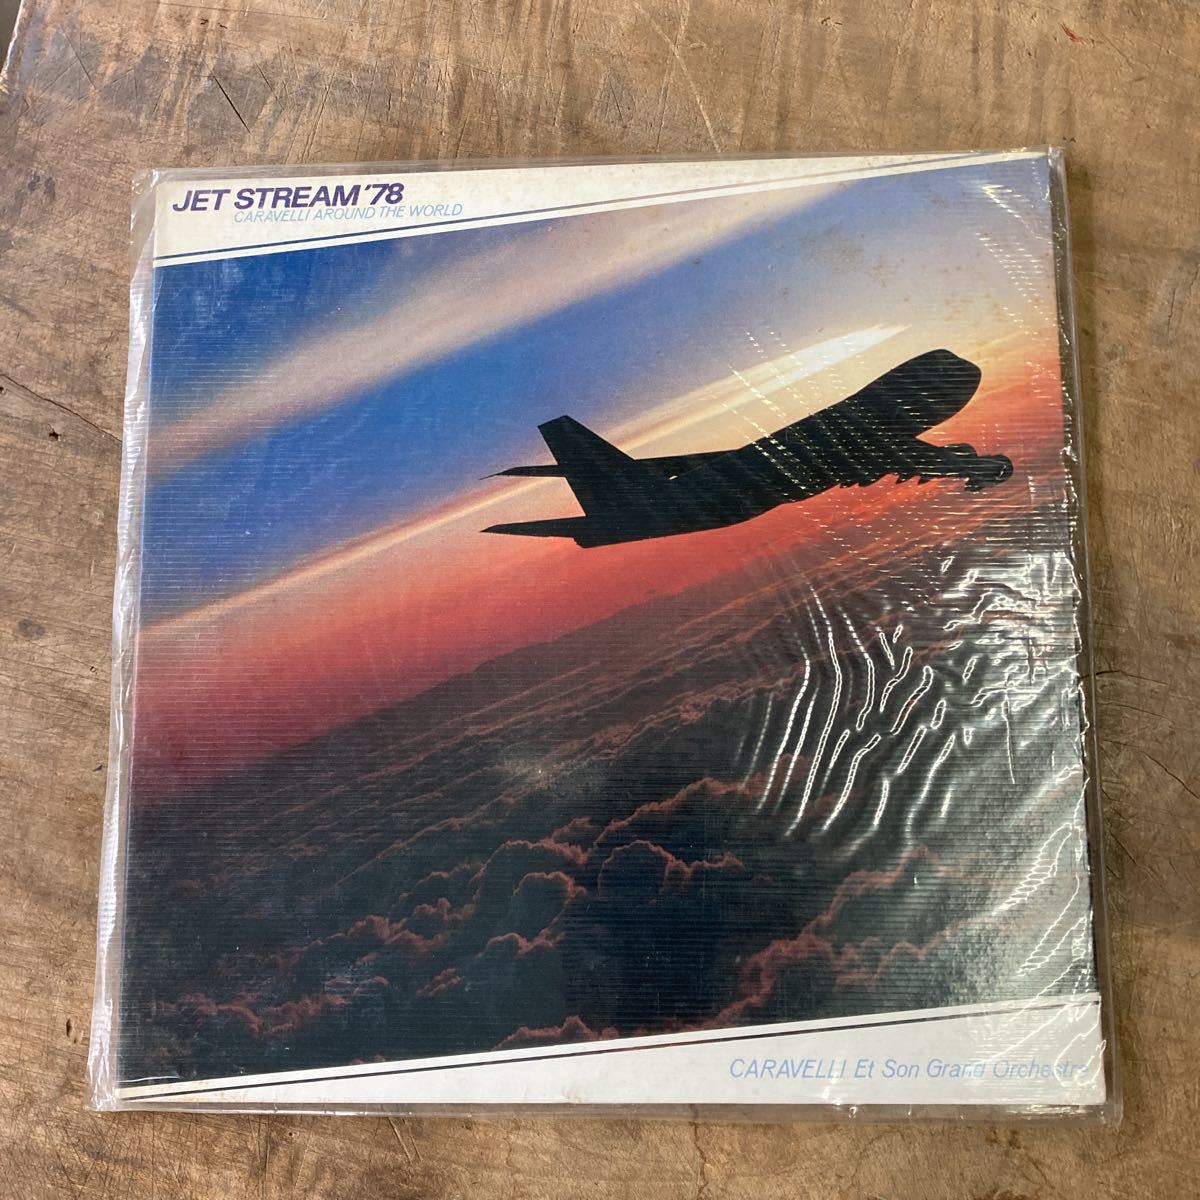 LP Jet stream '78 カラベリの世界旅行 カラベリ・グランドオーケストラ レコード 昭和